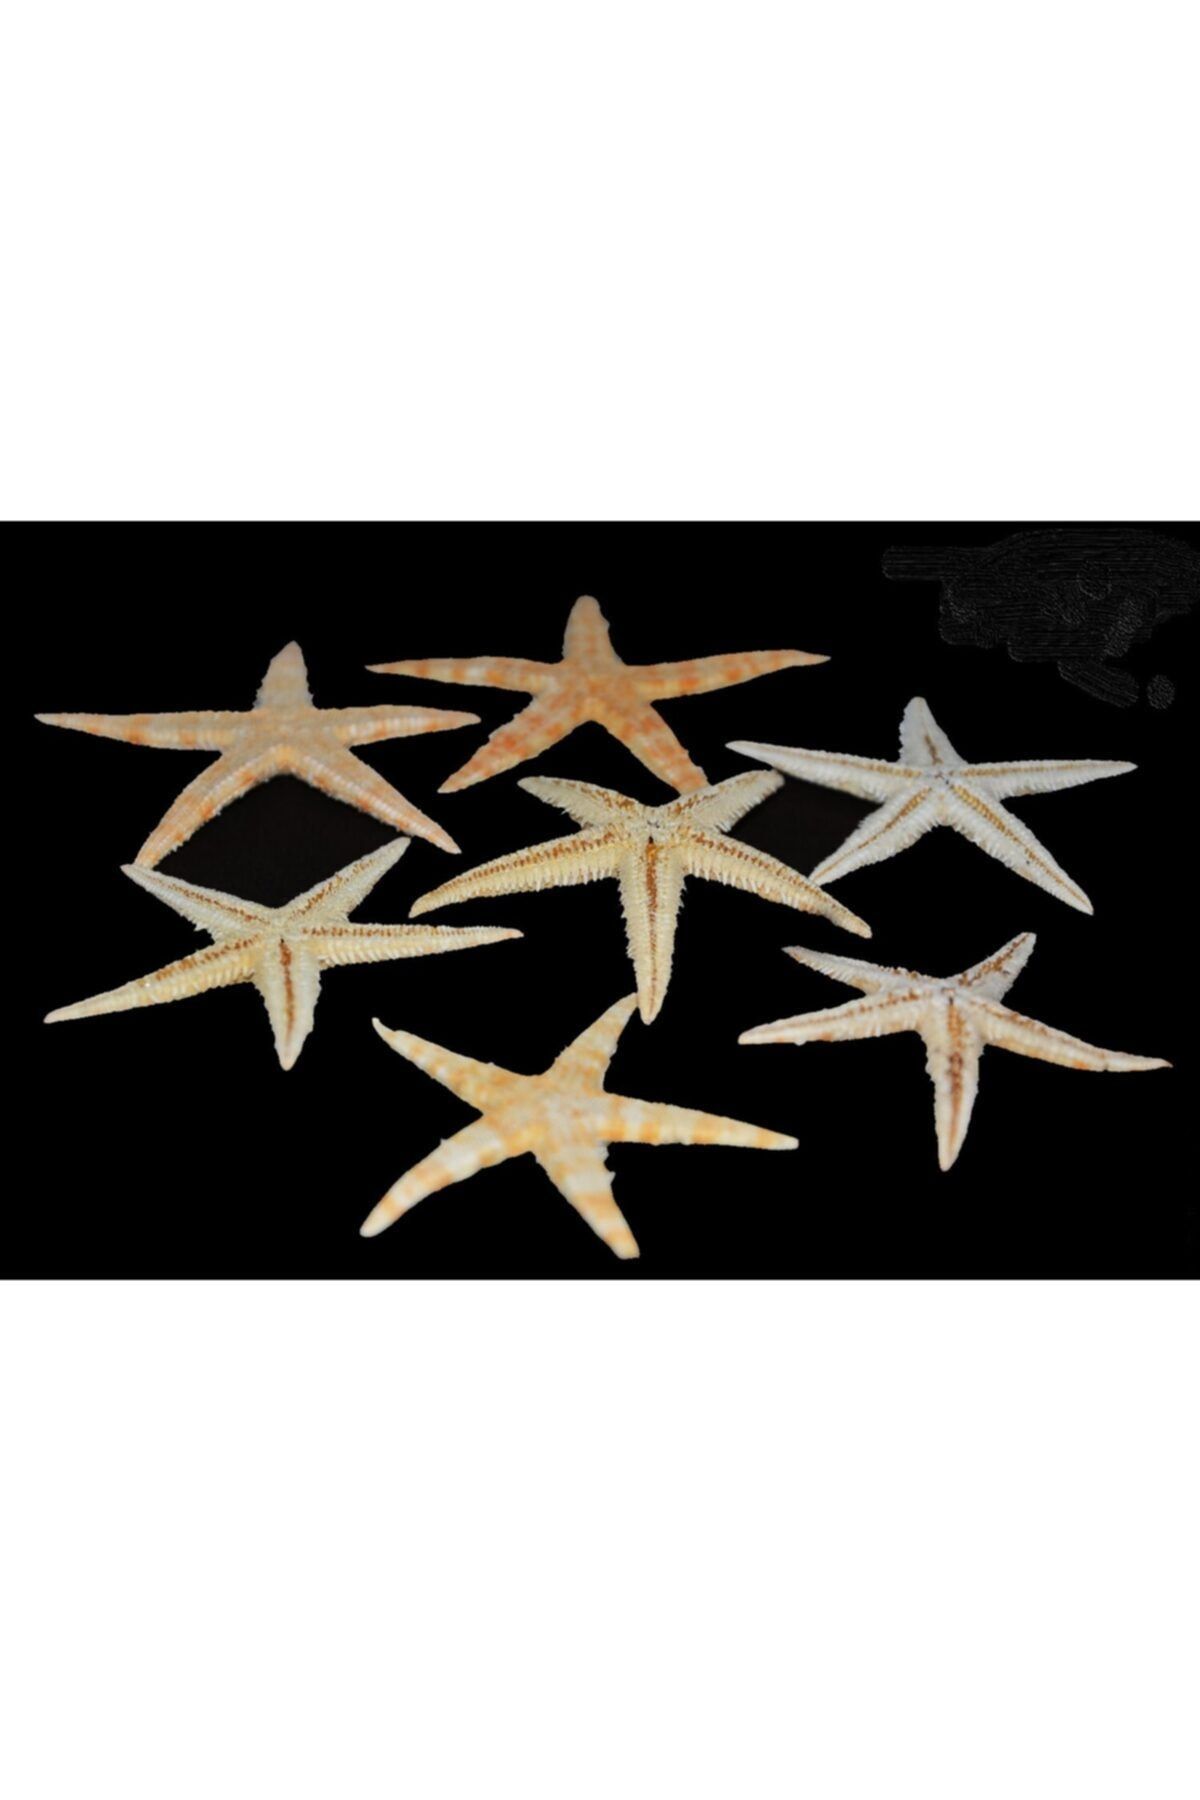 Aker Hediyelik Kaliteli Deniz Yıldızı 30 Adet 1,5x3,5cm Mükemmel Deniz Yıldızları Hobi El Işi Malzemeleri